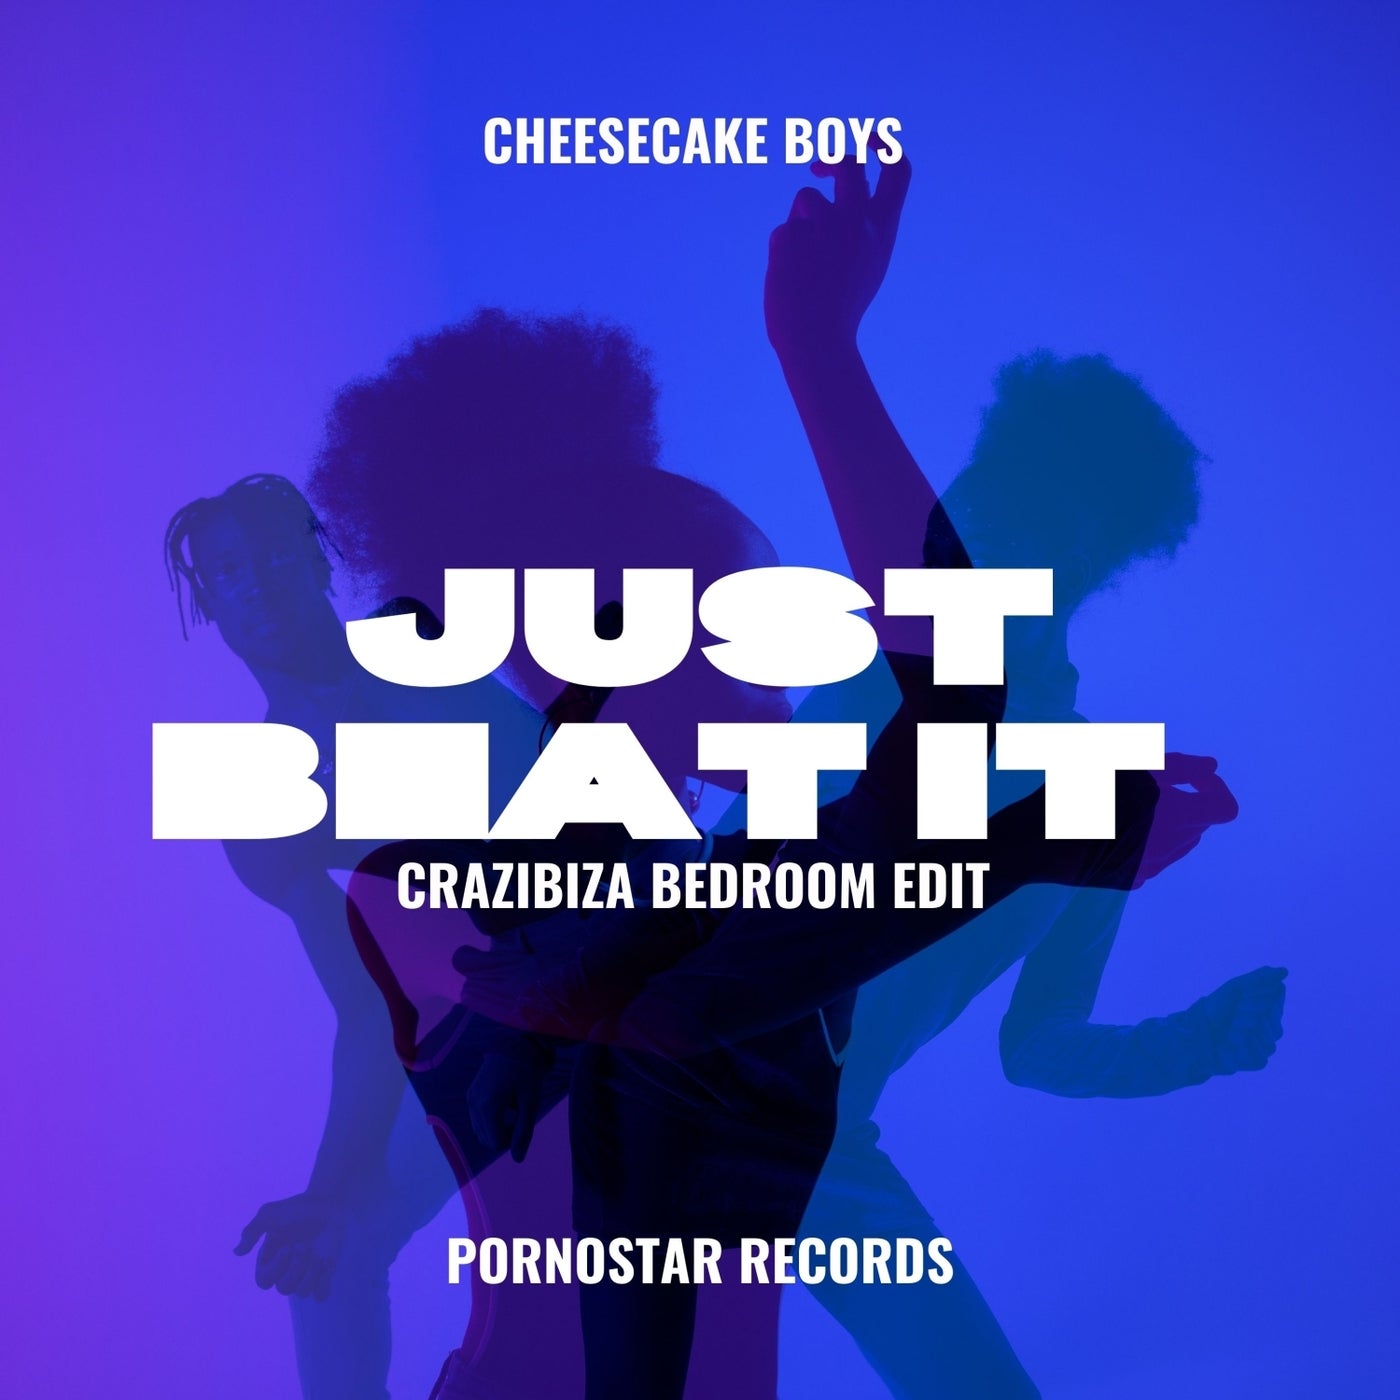 Just beat it  (Crazibiza Bedroom Edit)